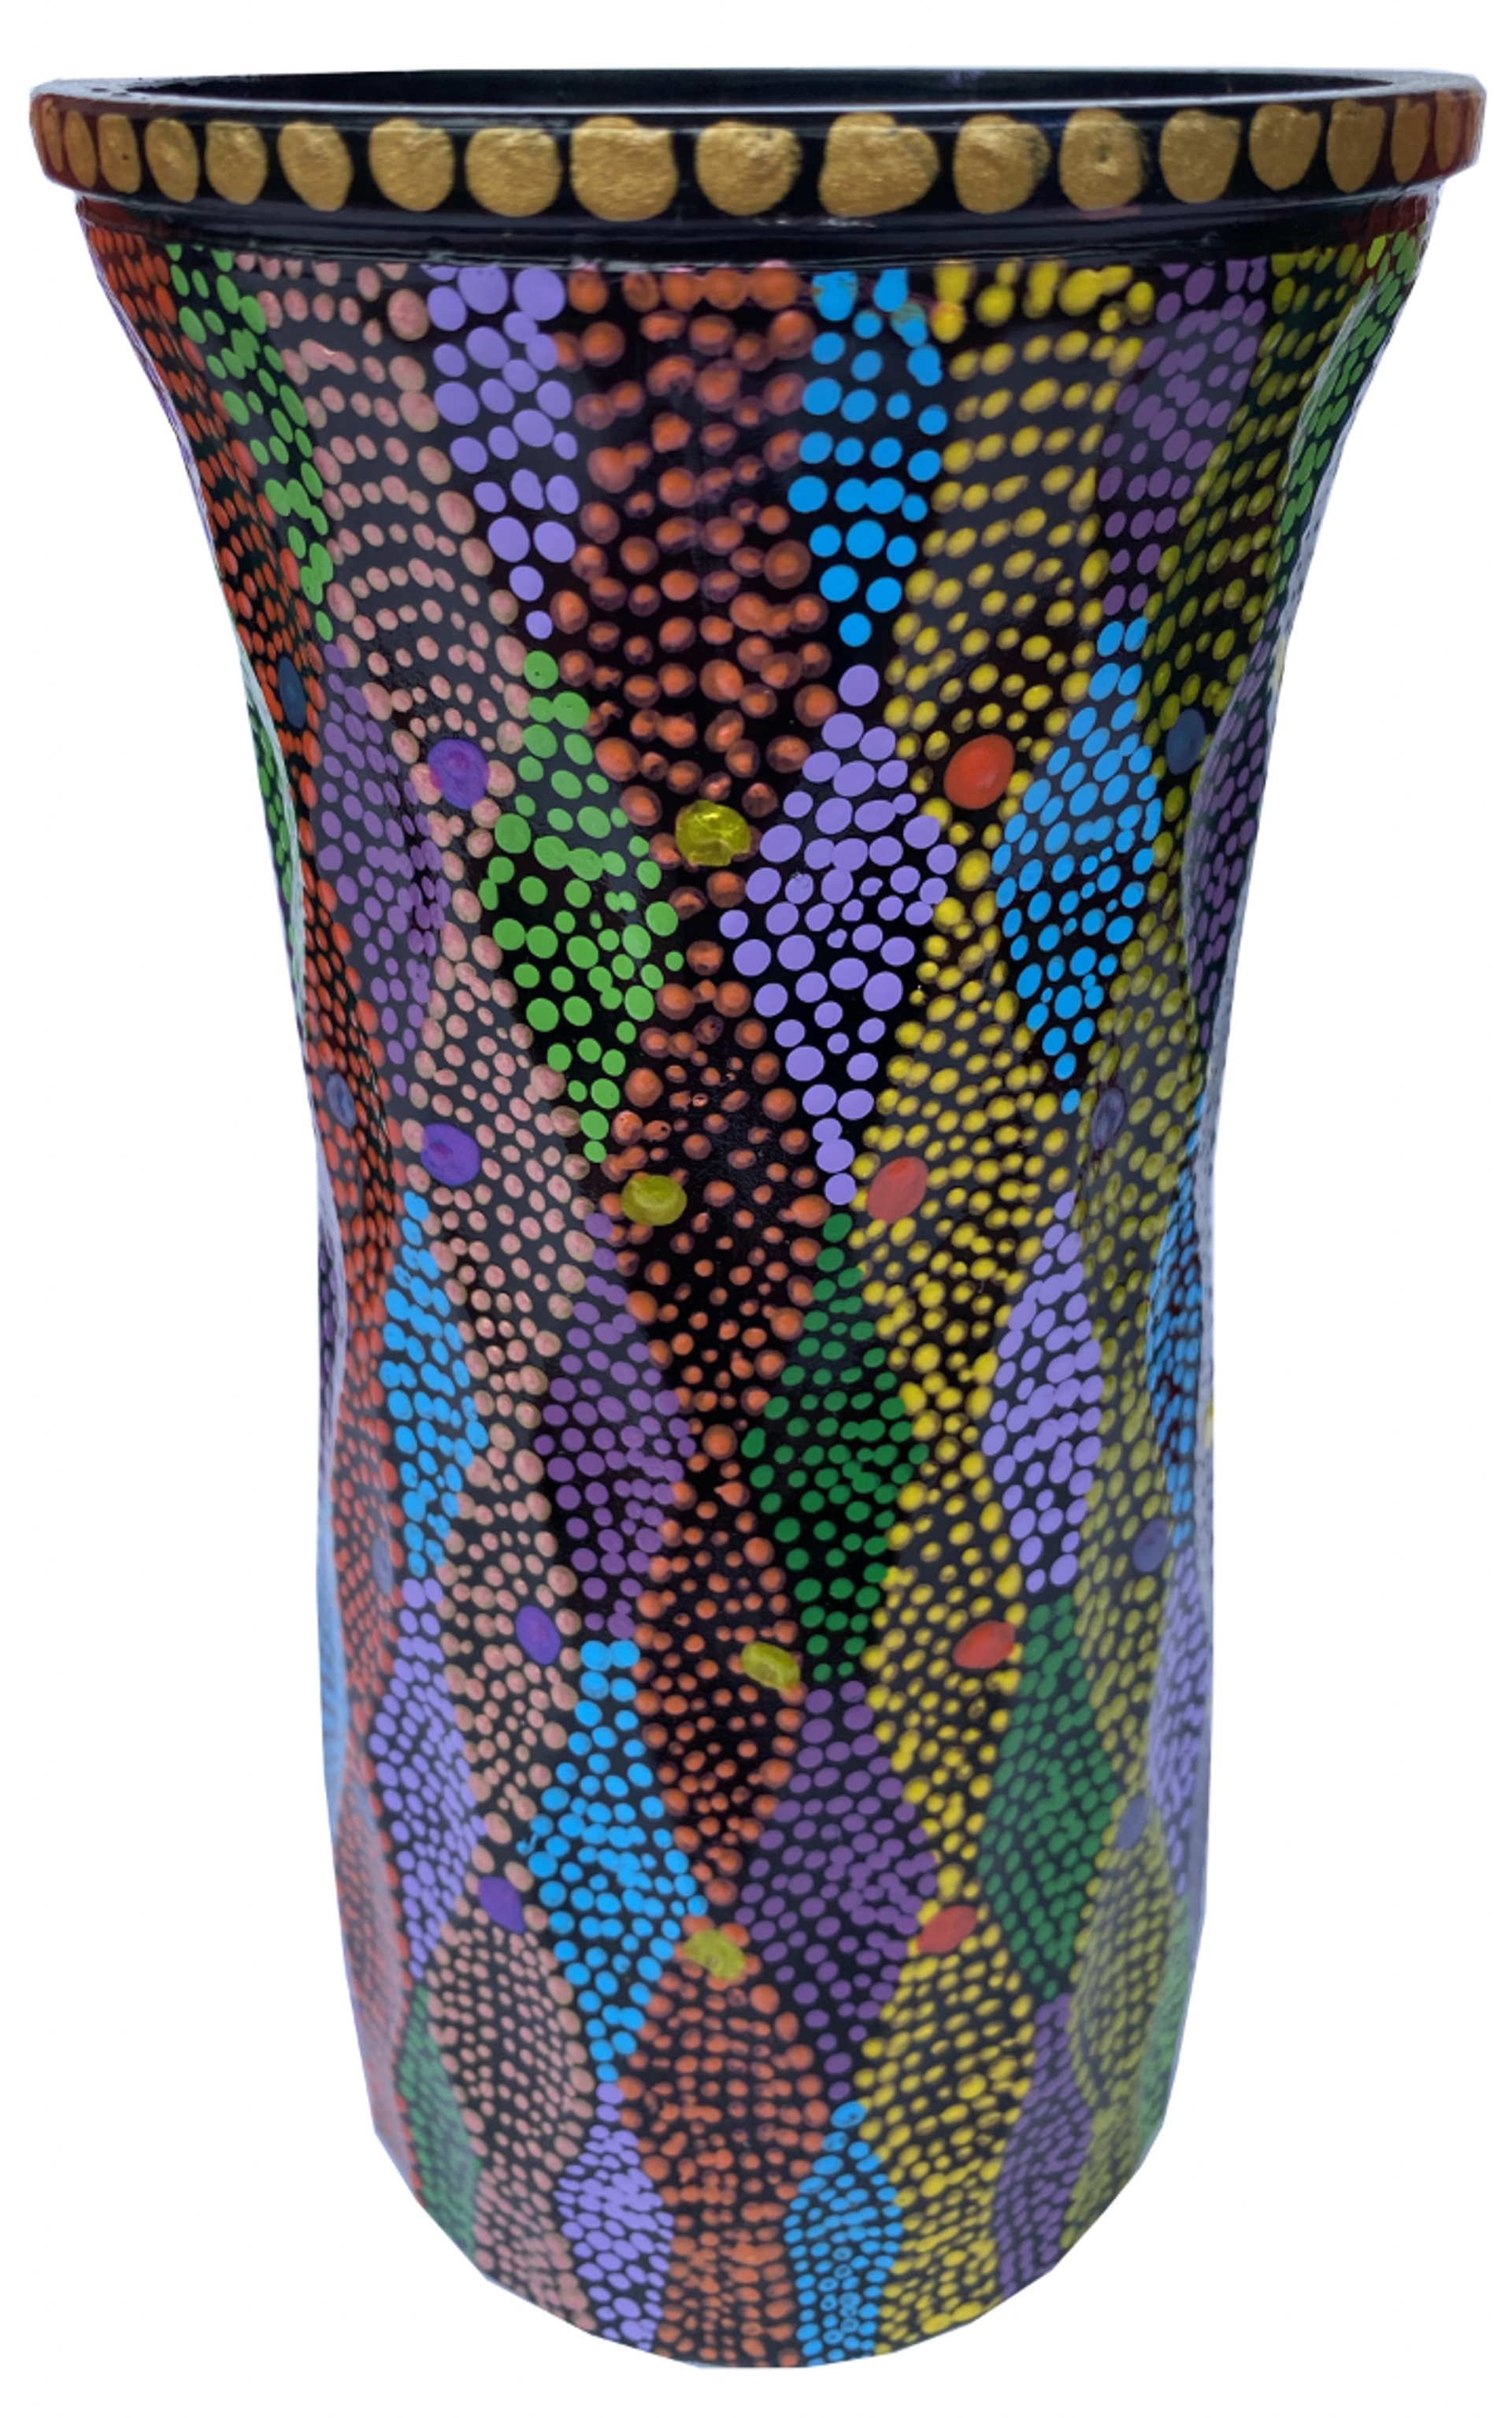 Vase - Dots by Carolyn Morgan Bauer